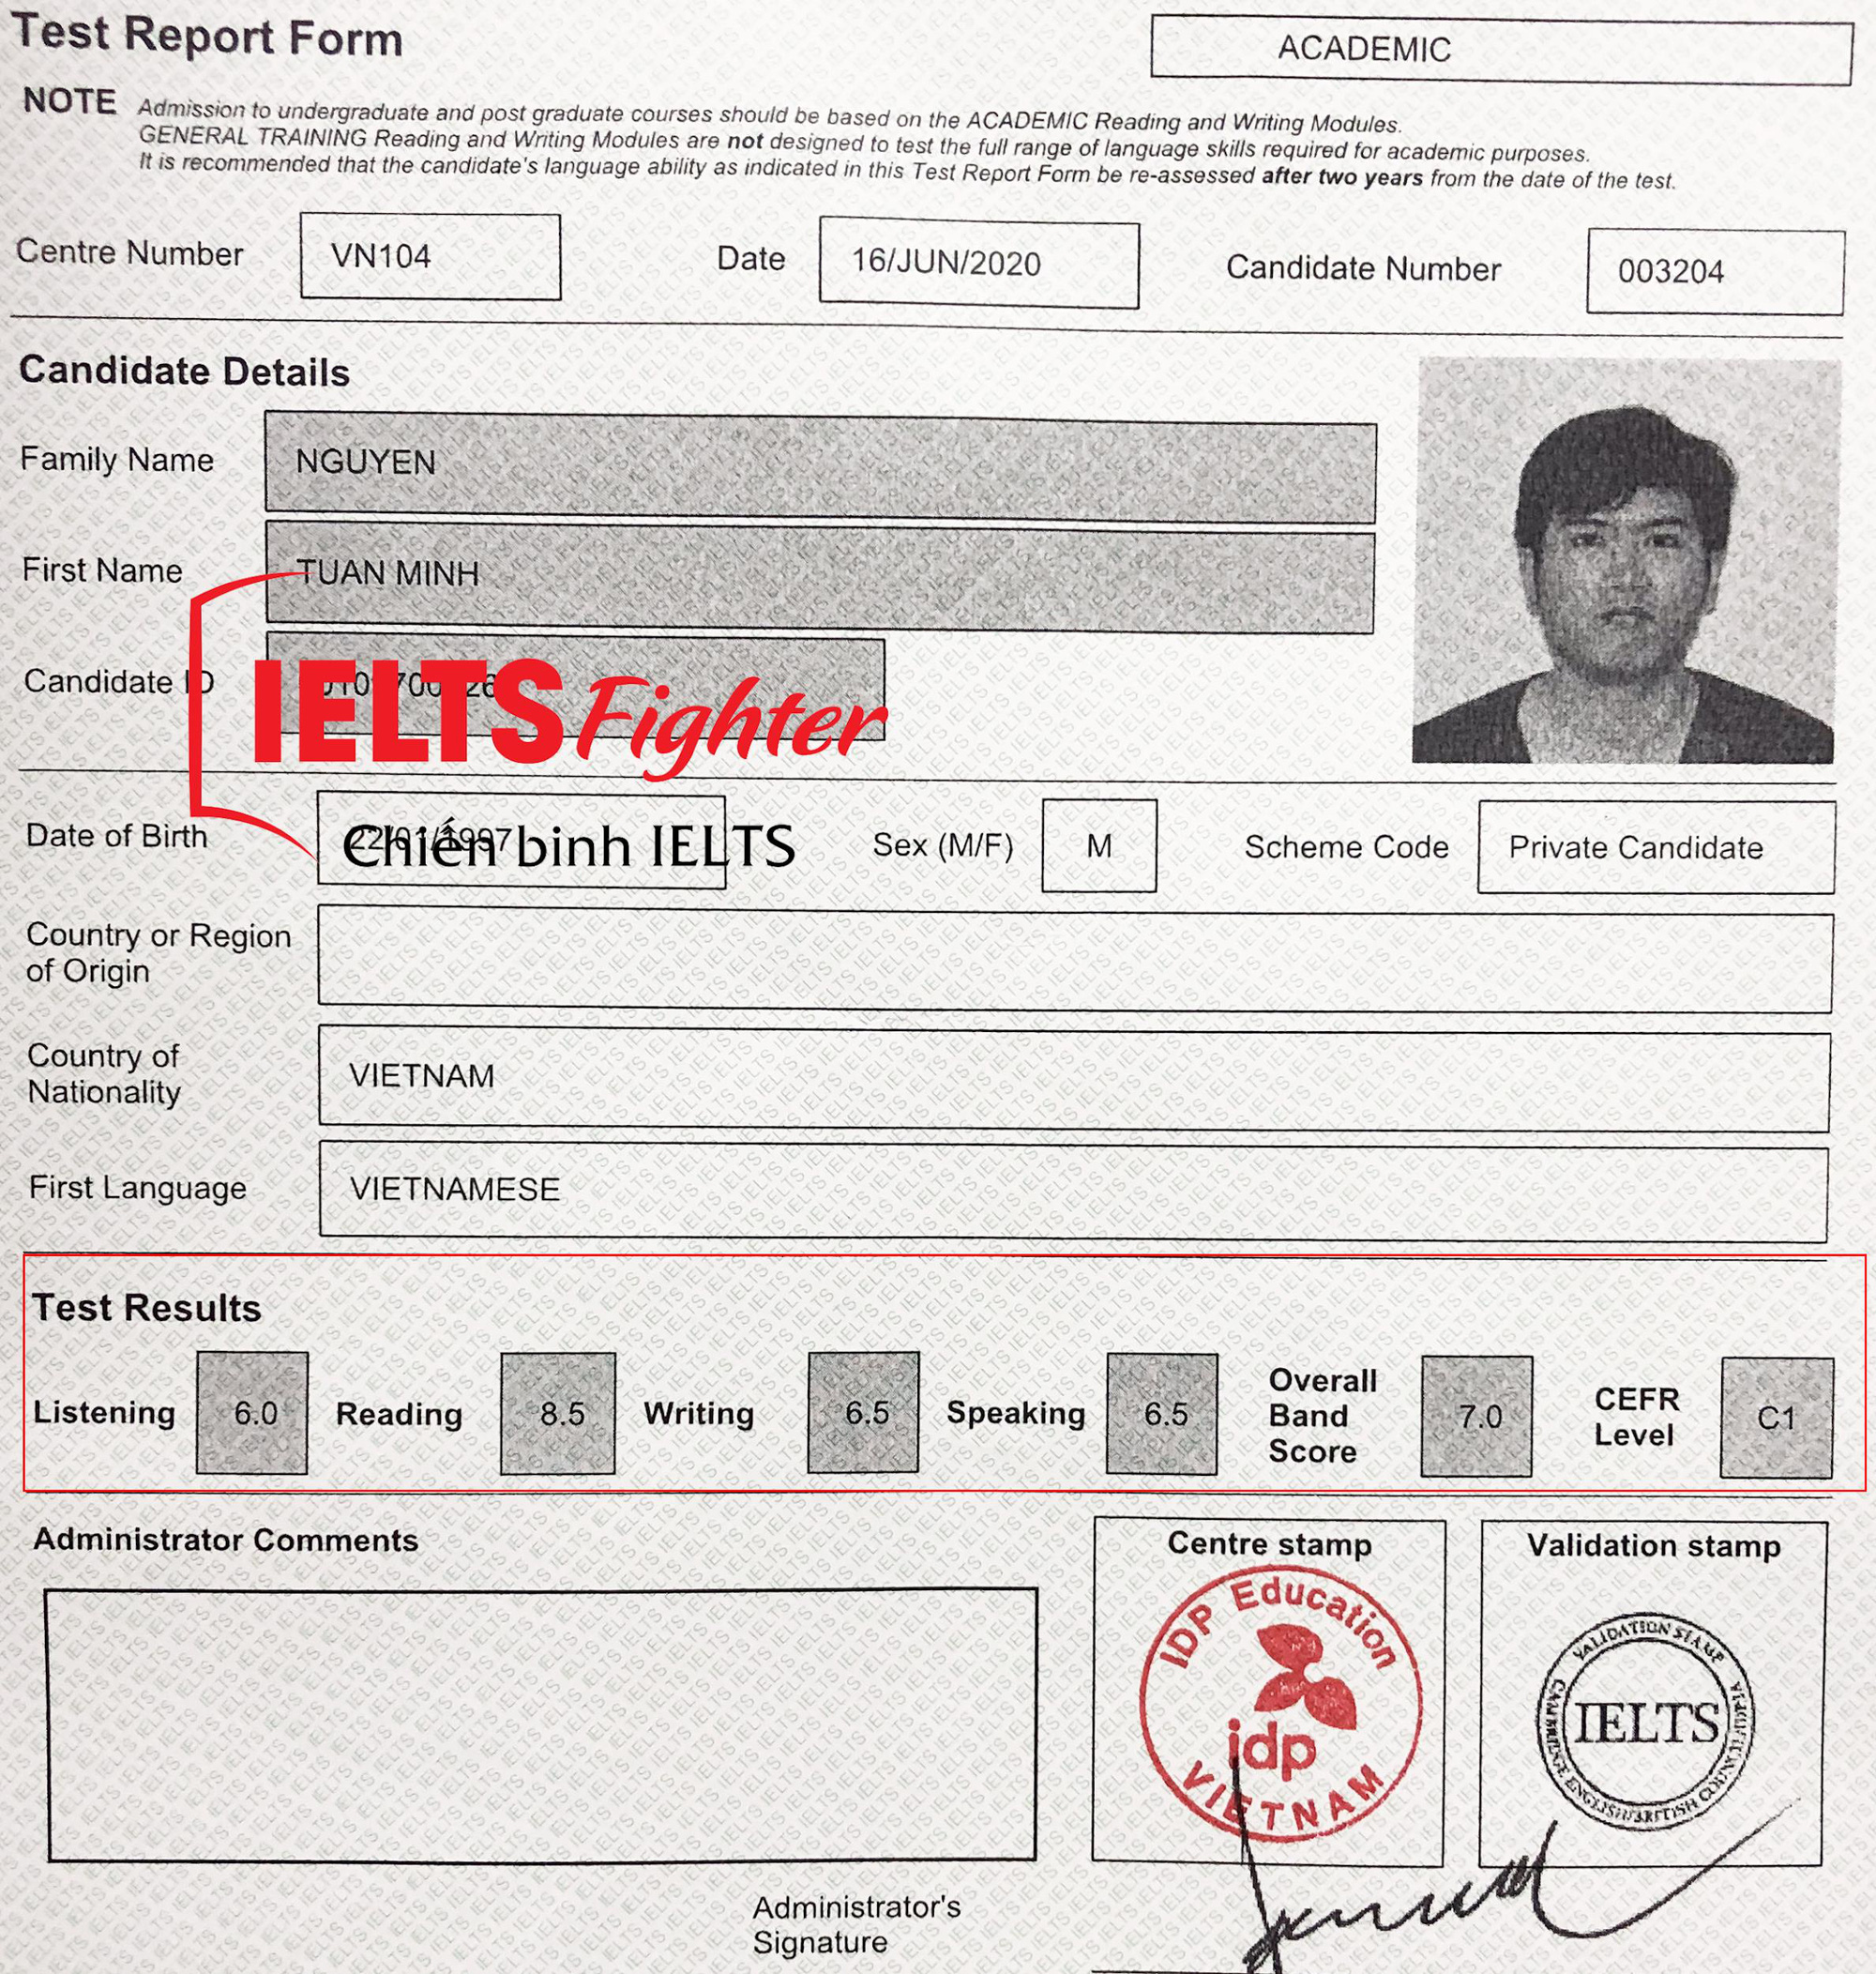 IELTS Fighter: trung tâm học IELTS hàng đầu tại Hà Nội - Ảnh 2.